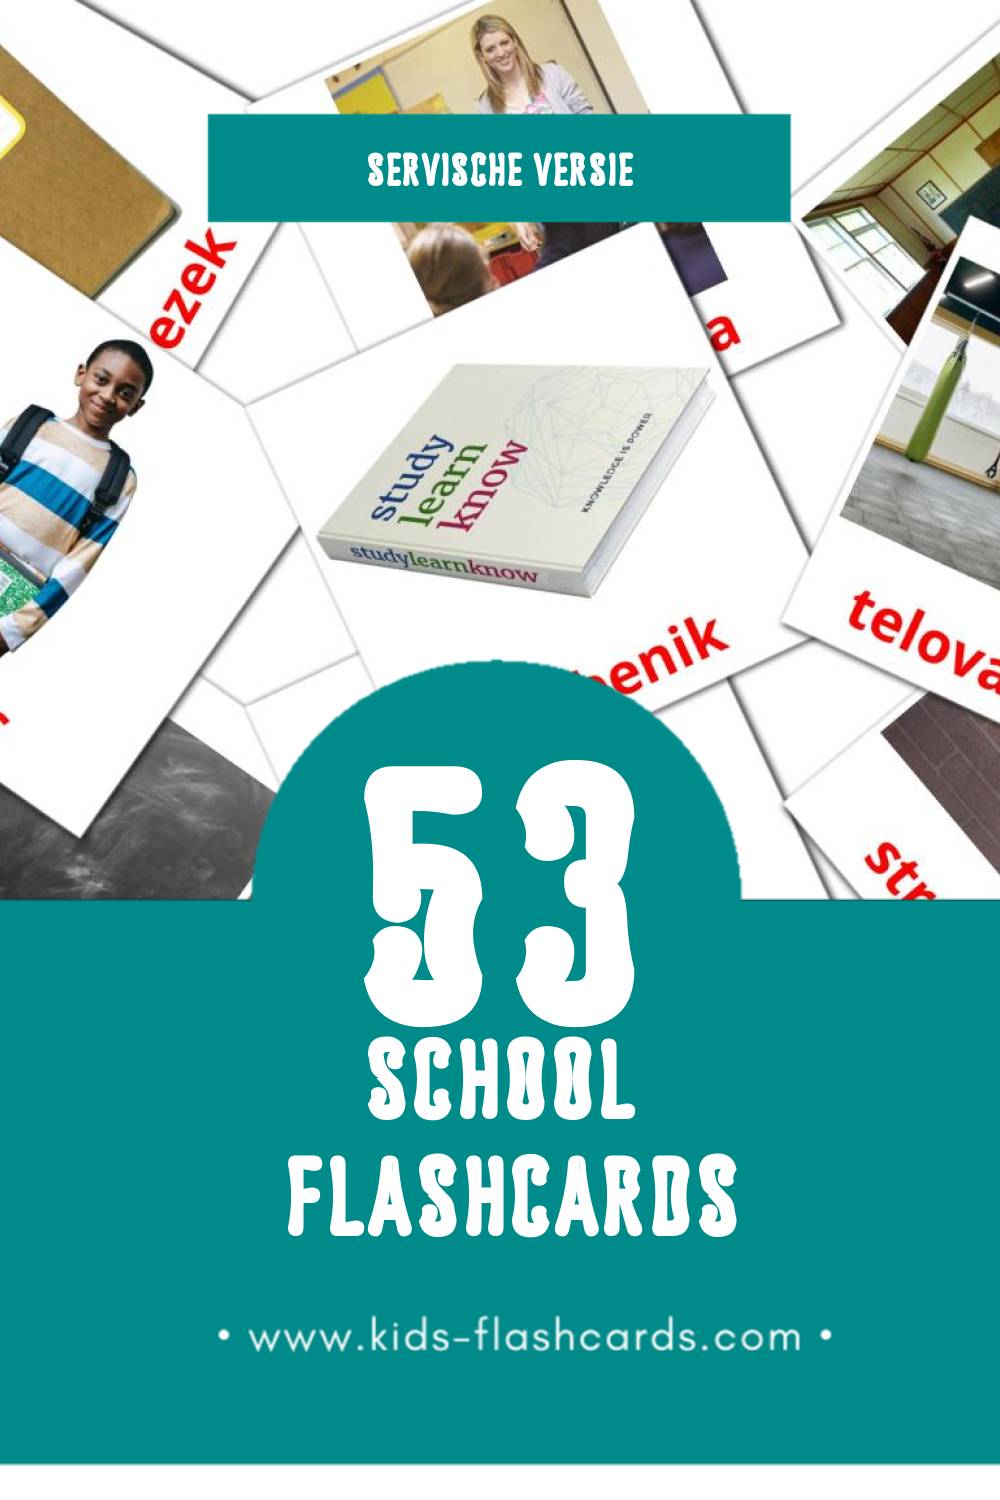 Visuele Šola Flashcards voor Kleuters (53 kaarten in het Servisch)